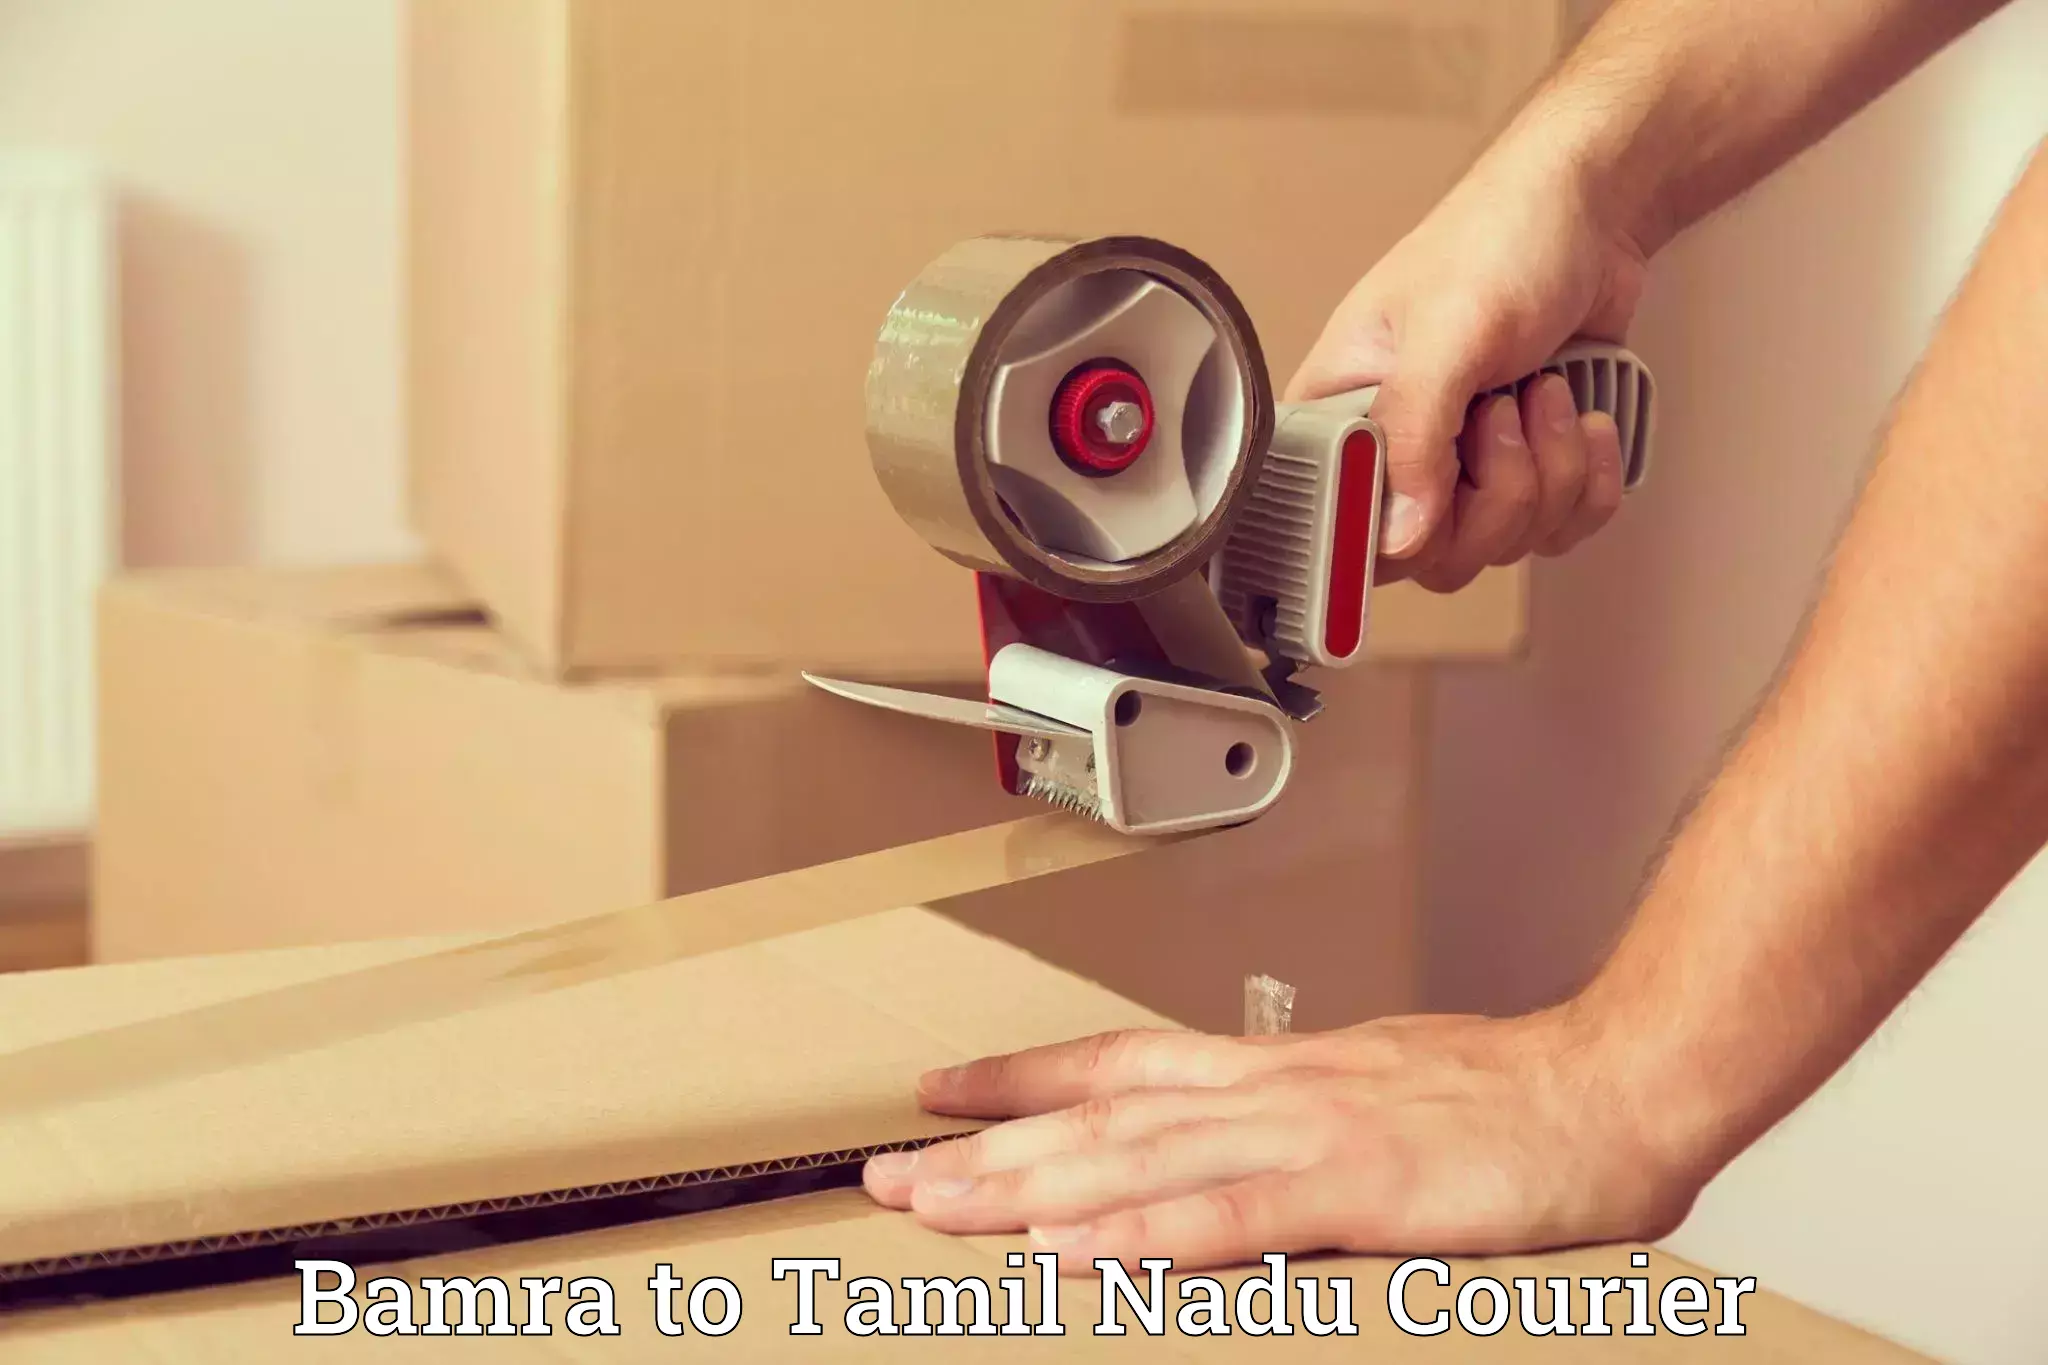 Furniture moving experts Bamra to Tamil Nadu